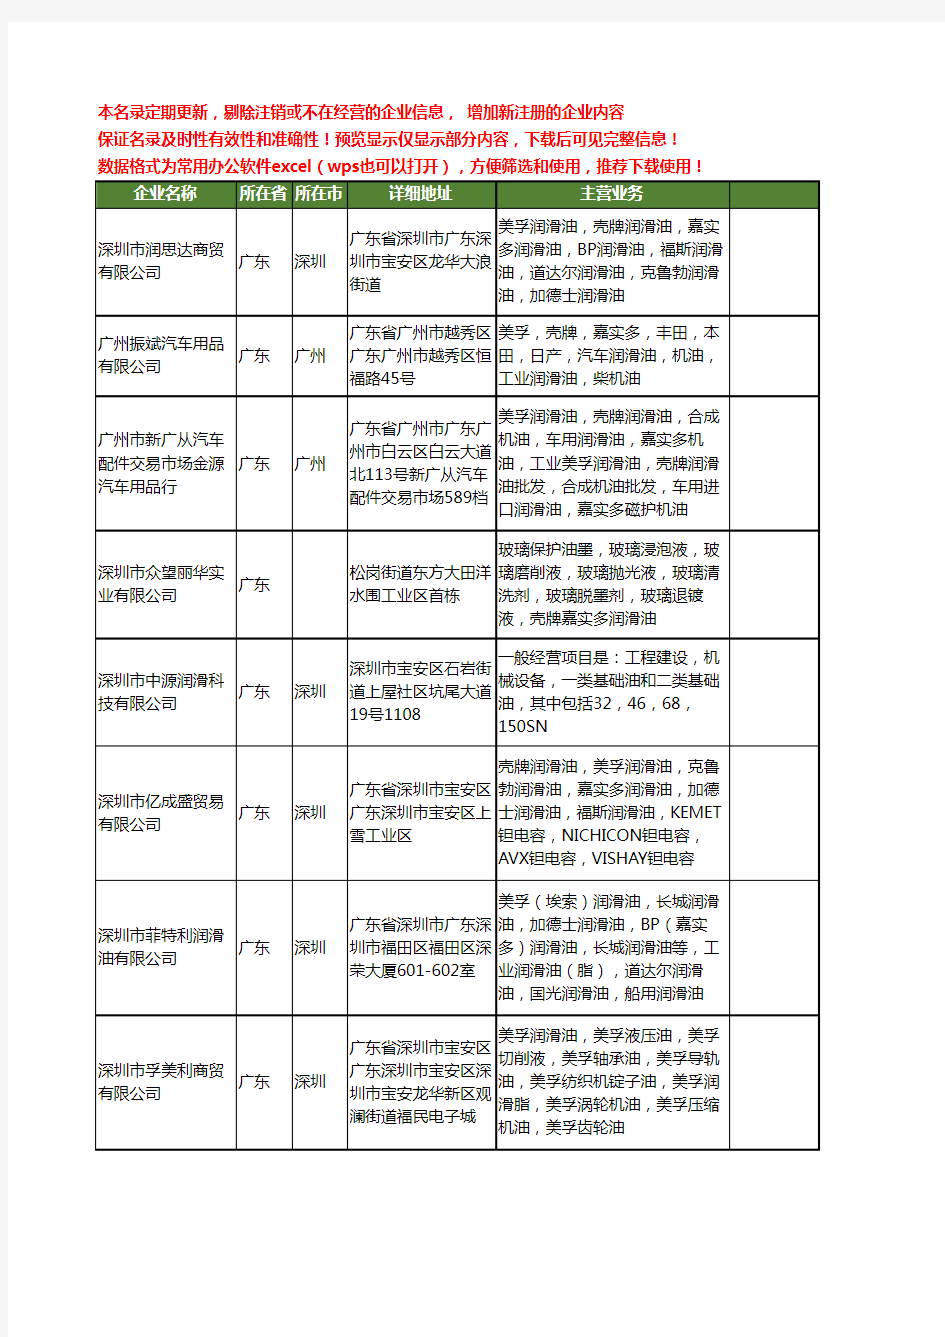 新版广东省嘉实多润滑油工商企业公司商家名录名单联系方式大全21家